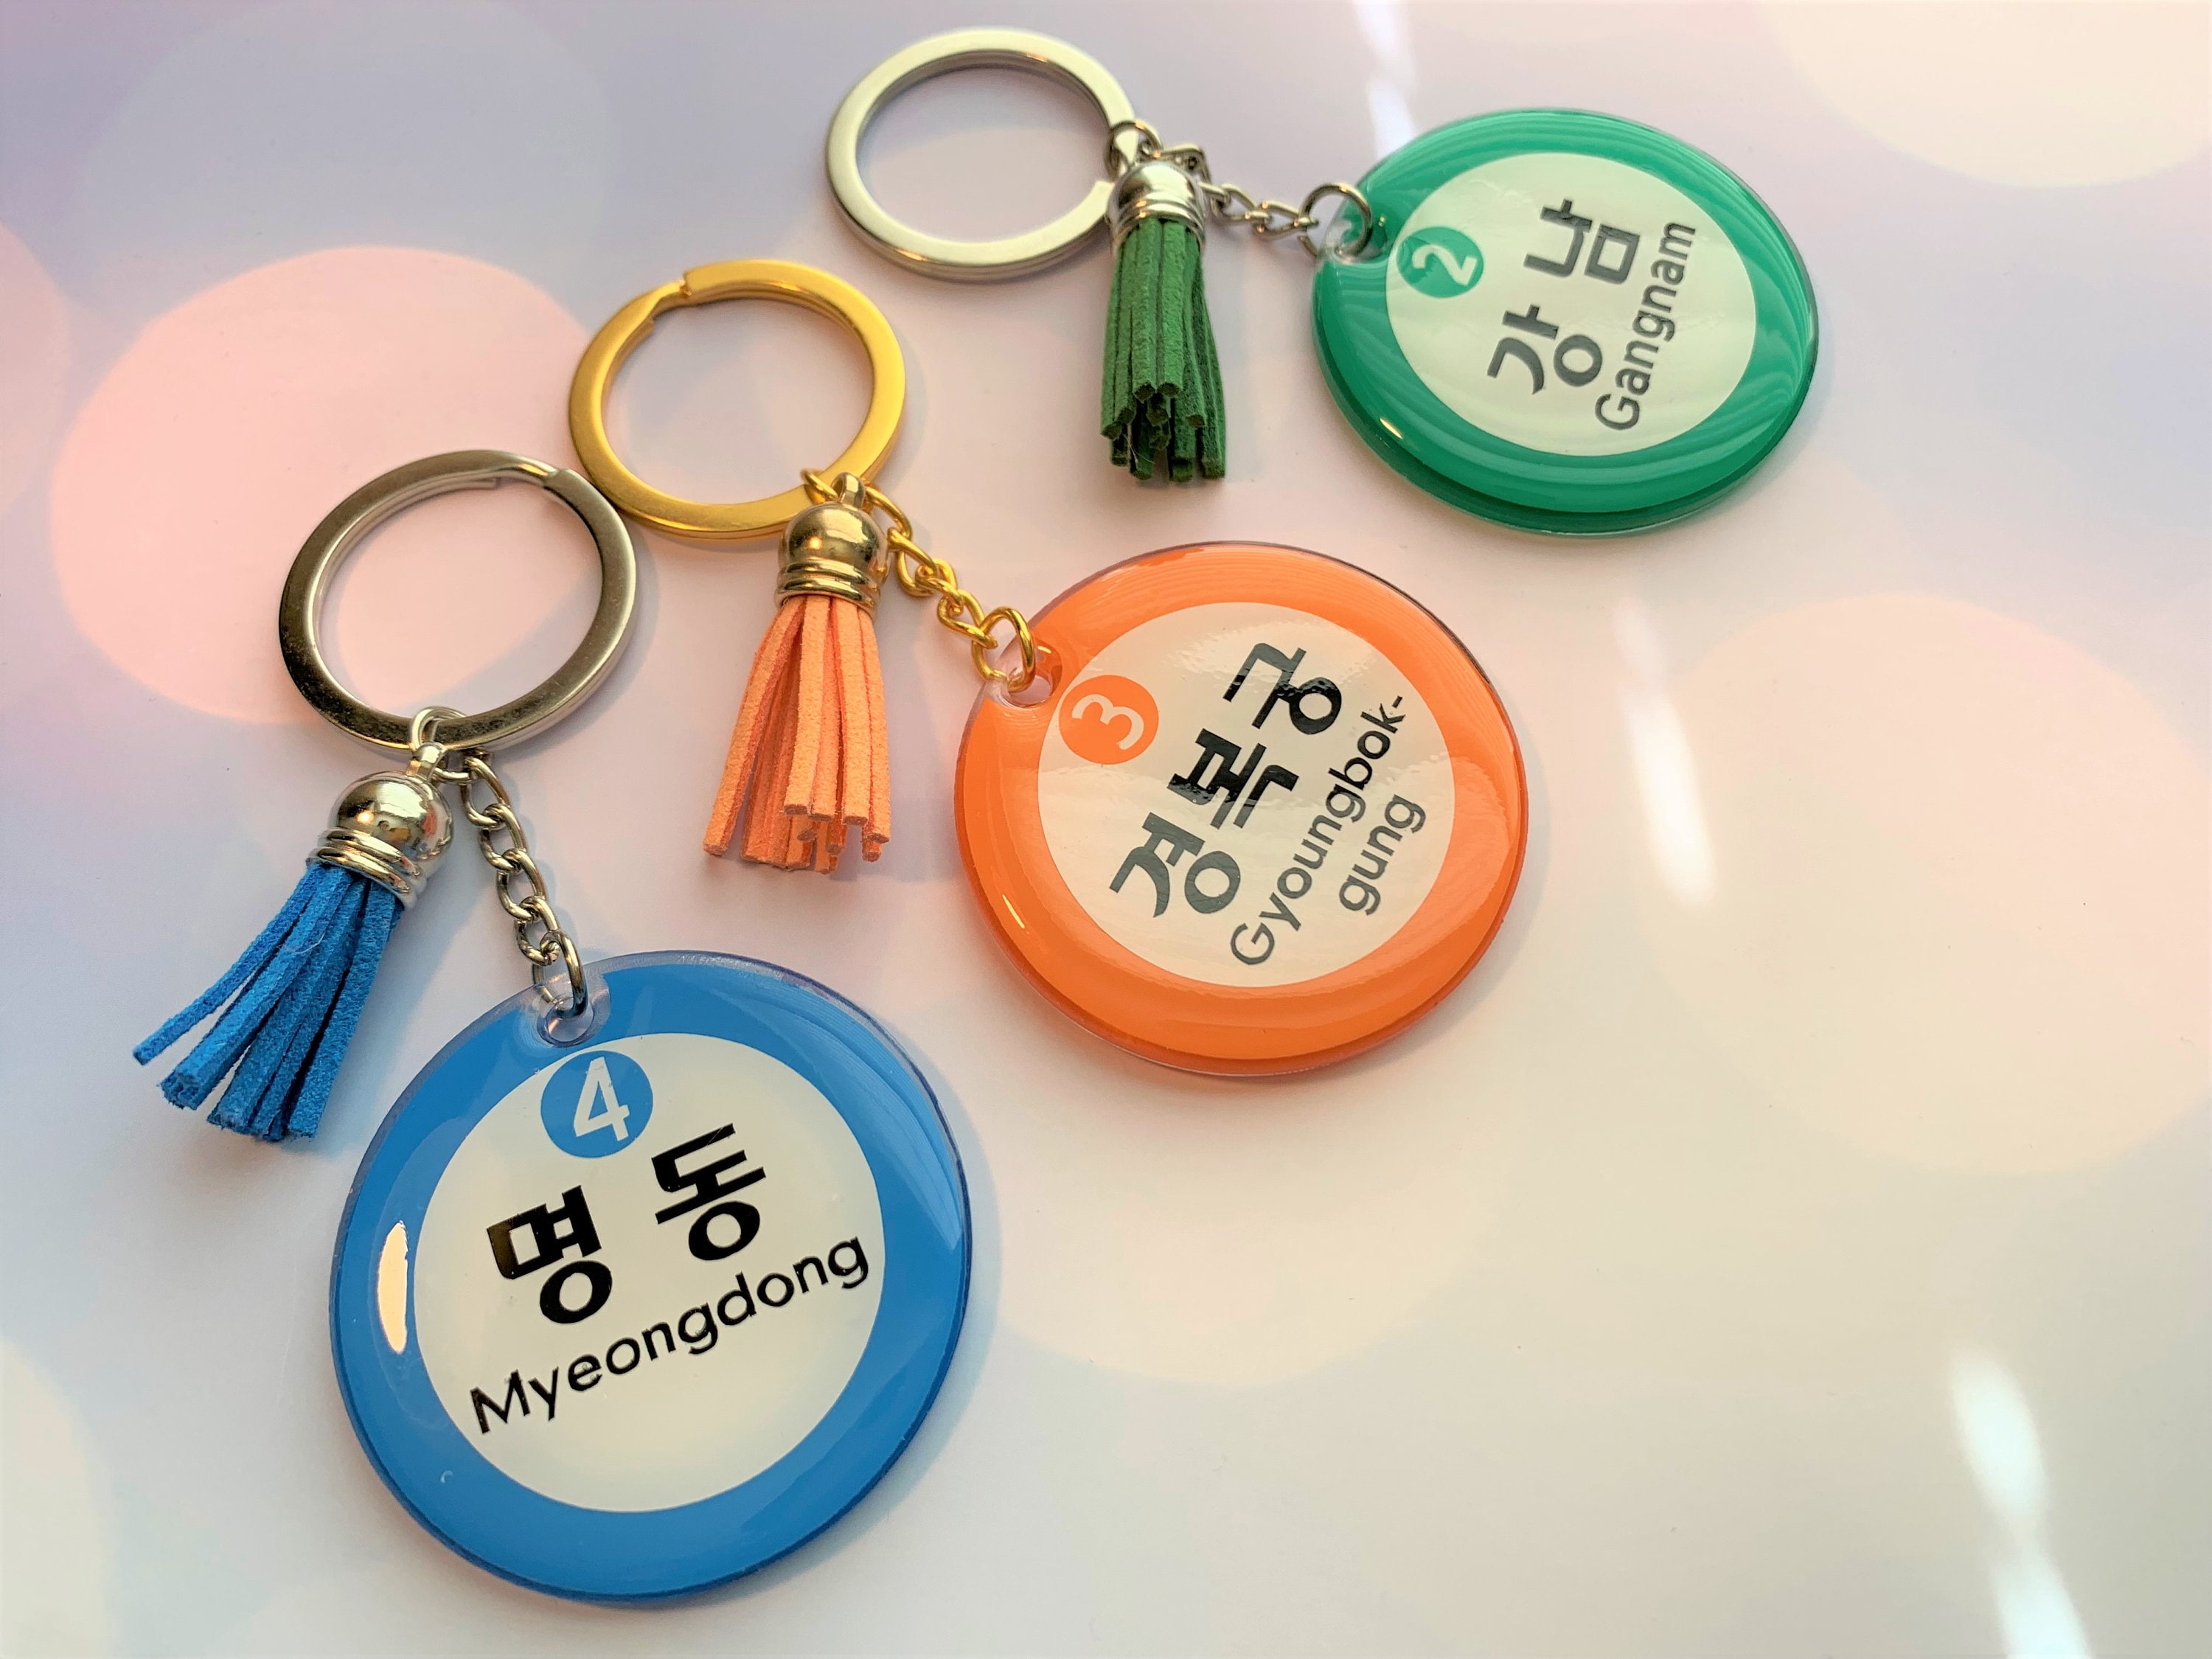 Seoul Mini Keychain